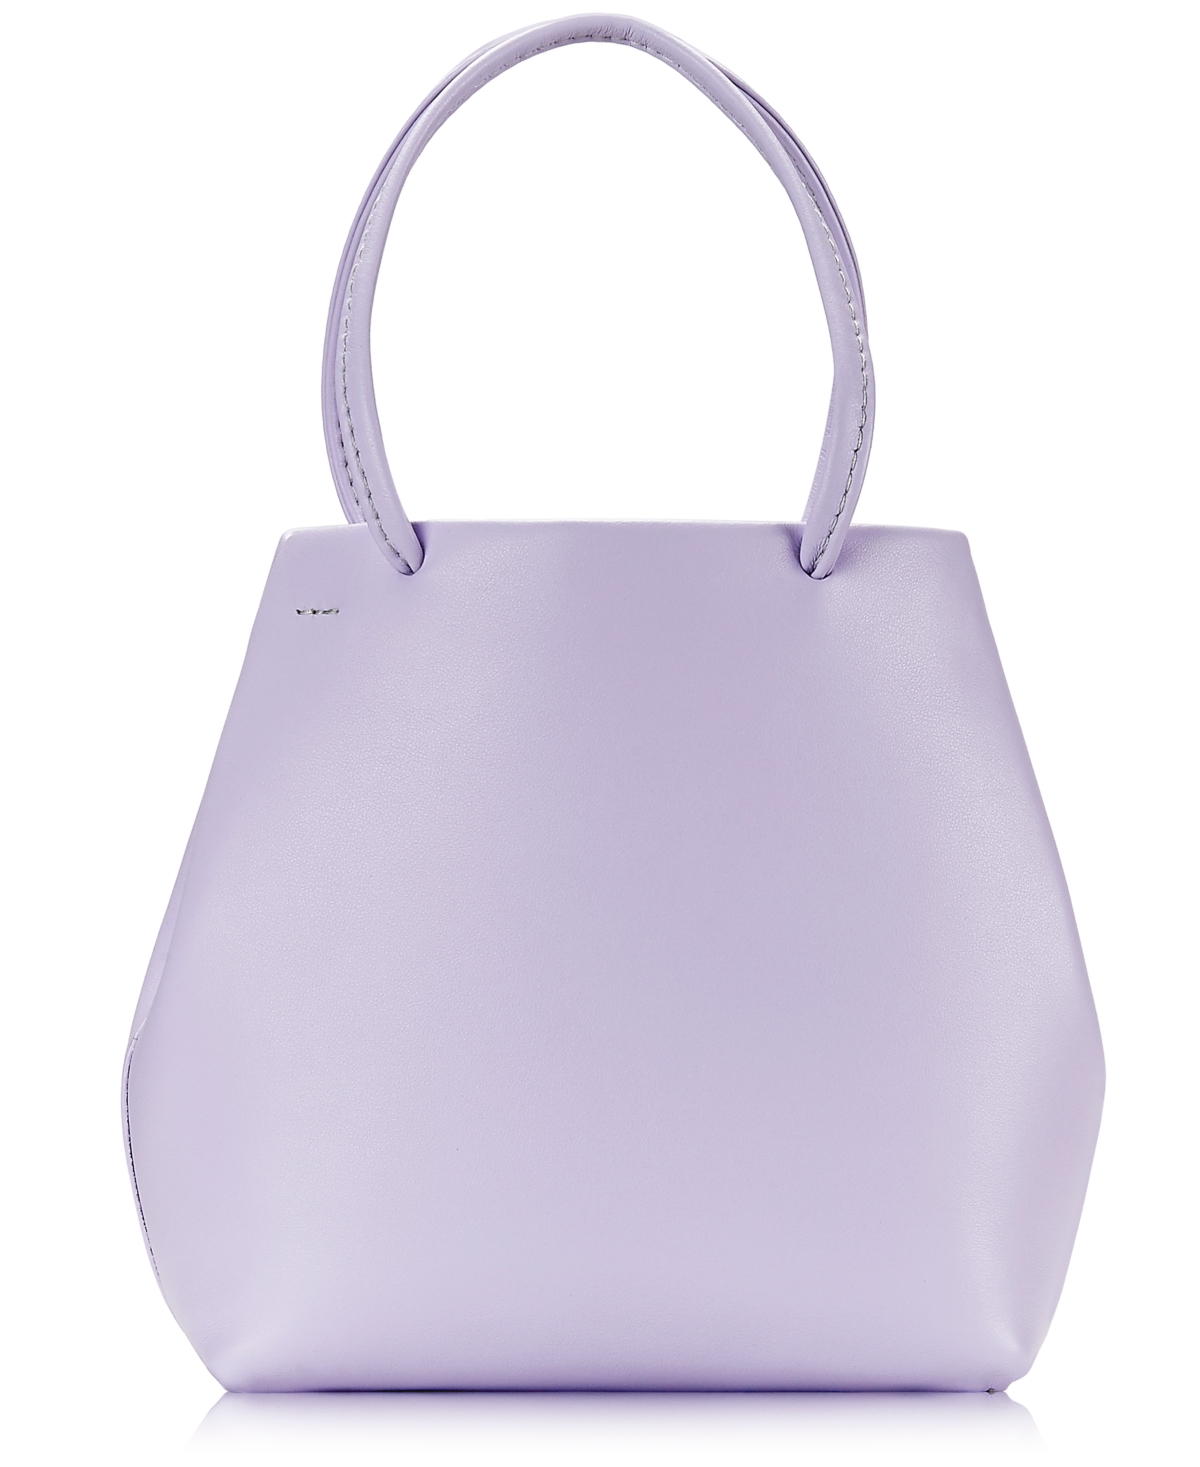 Sydney Mini Leather Shopper Bag - Lilac